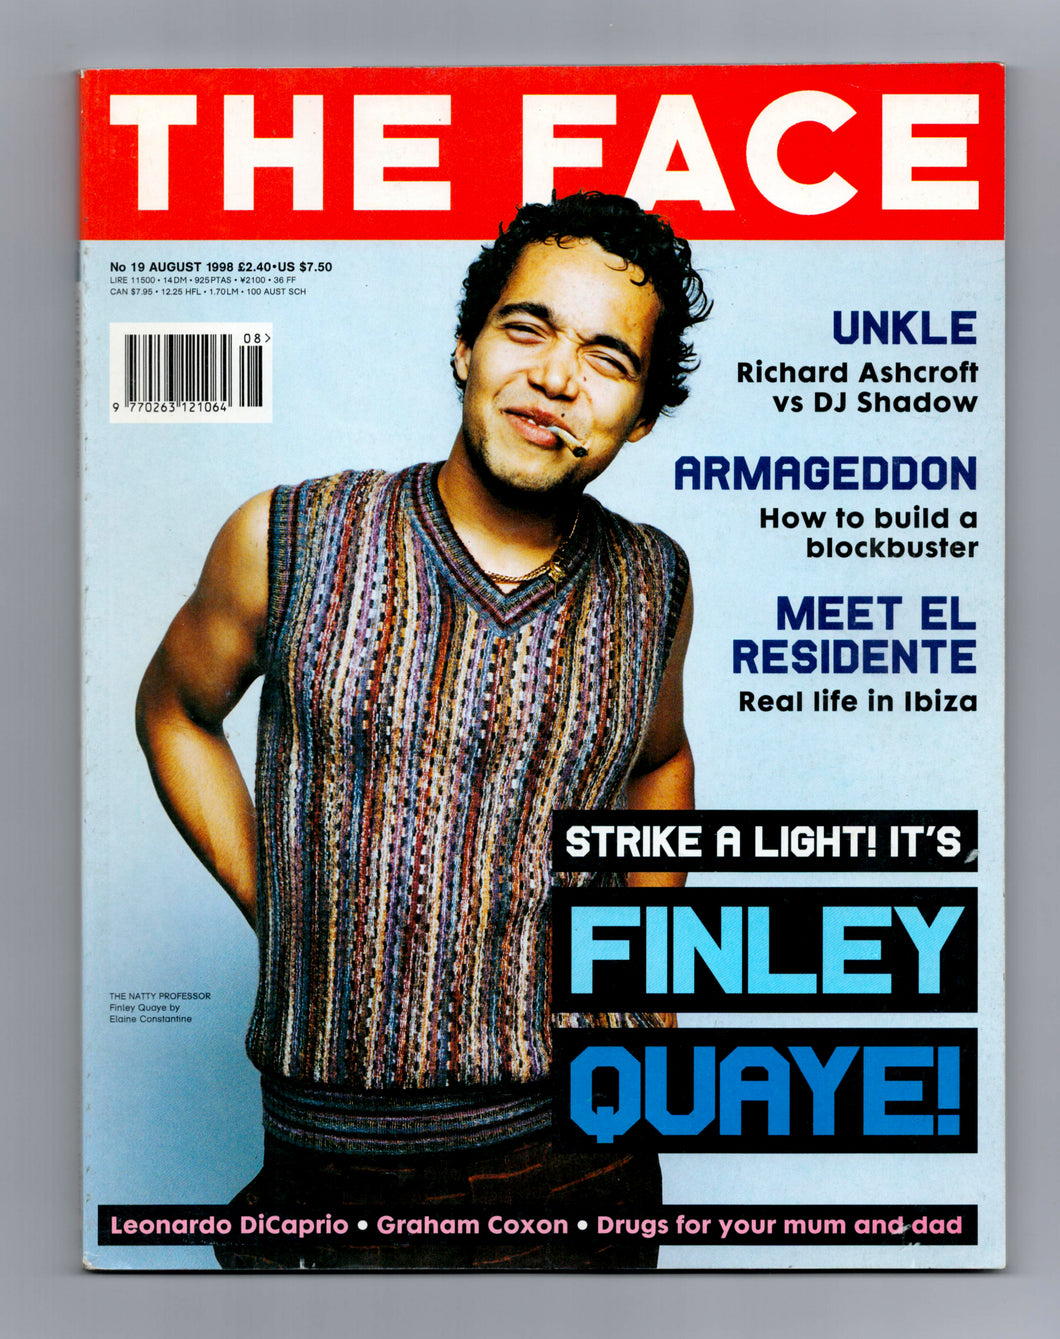 The Face Vol 3 No 19 Aug 1998